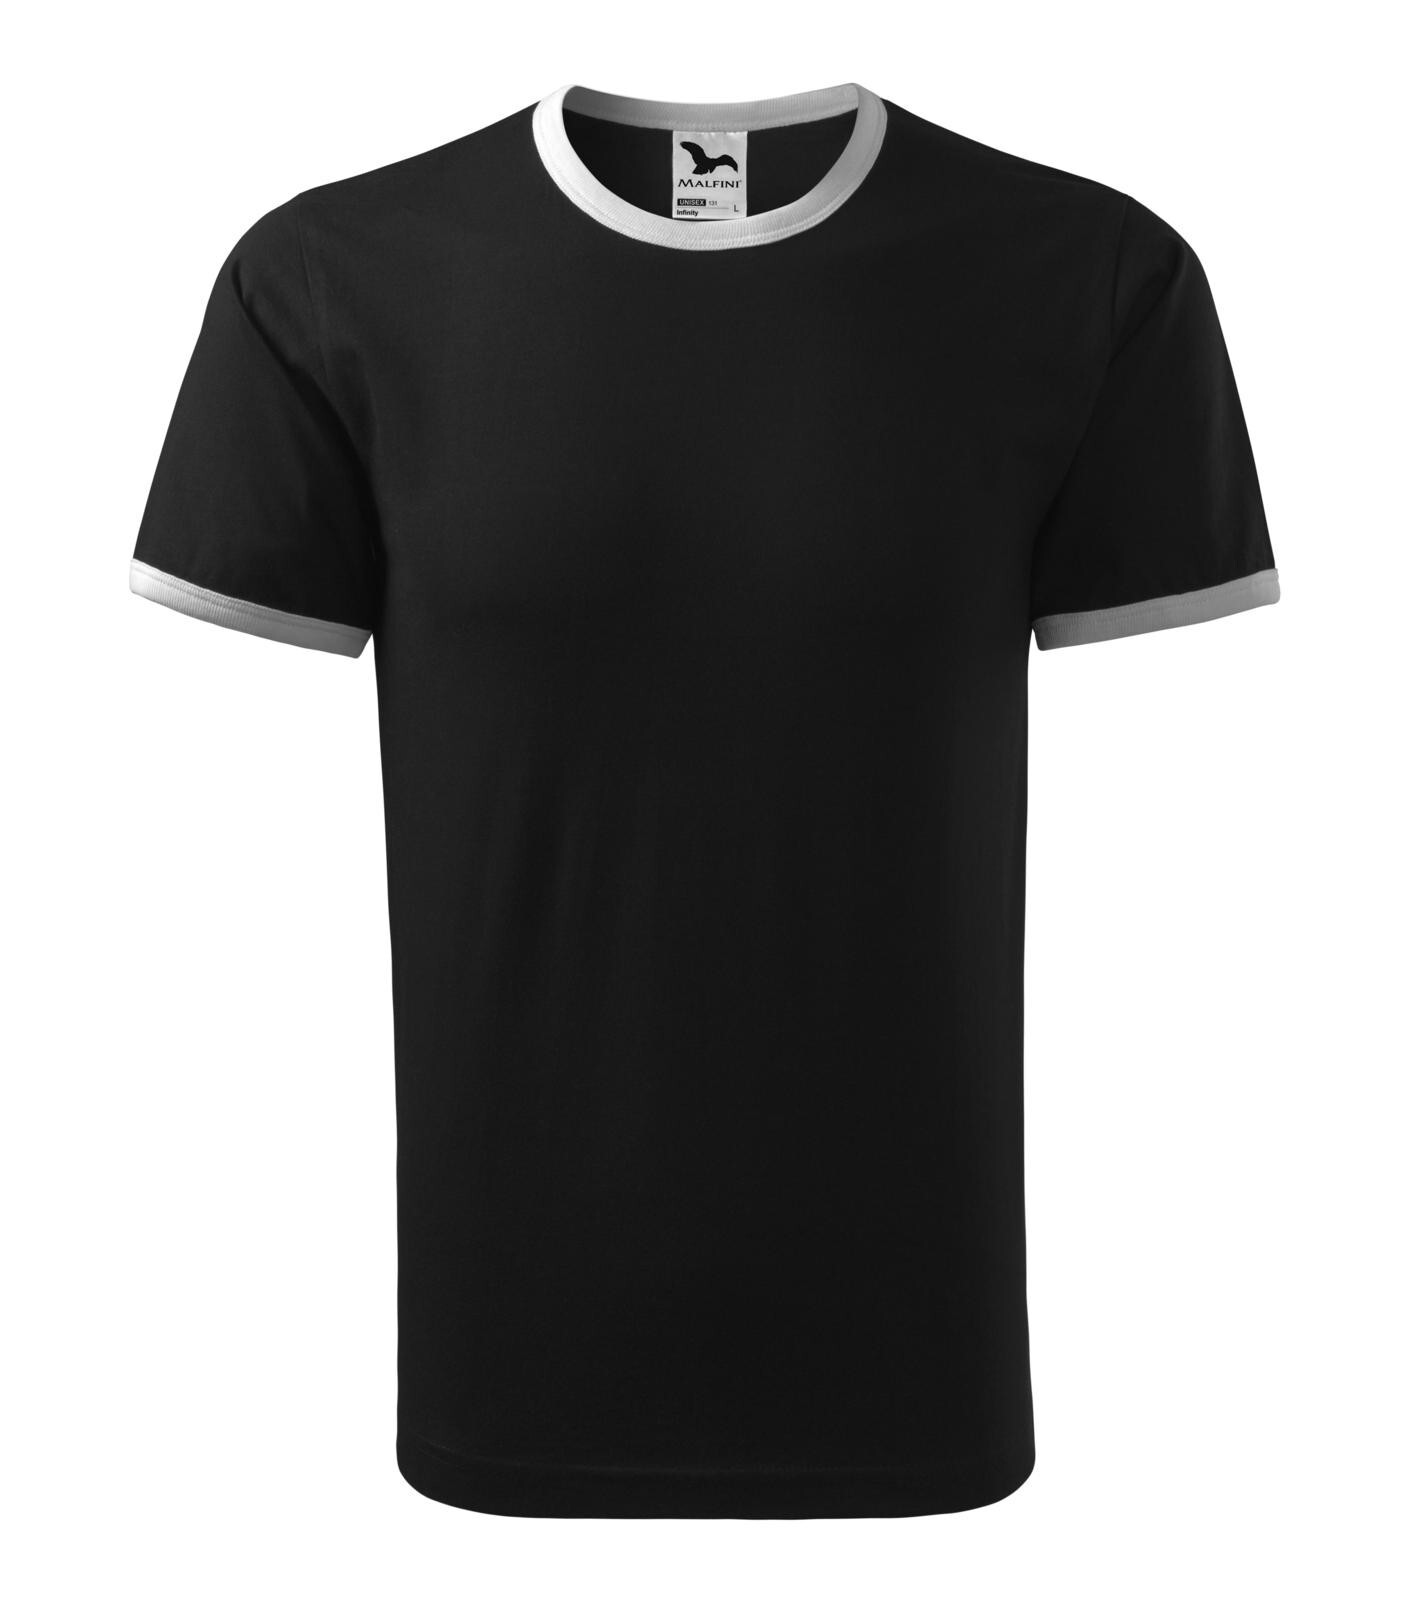 Unisex tričko Adler Infinity 131 - veľkosť: XL, farba: čierna/biela